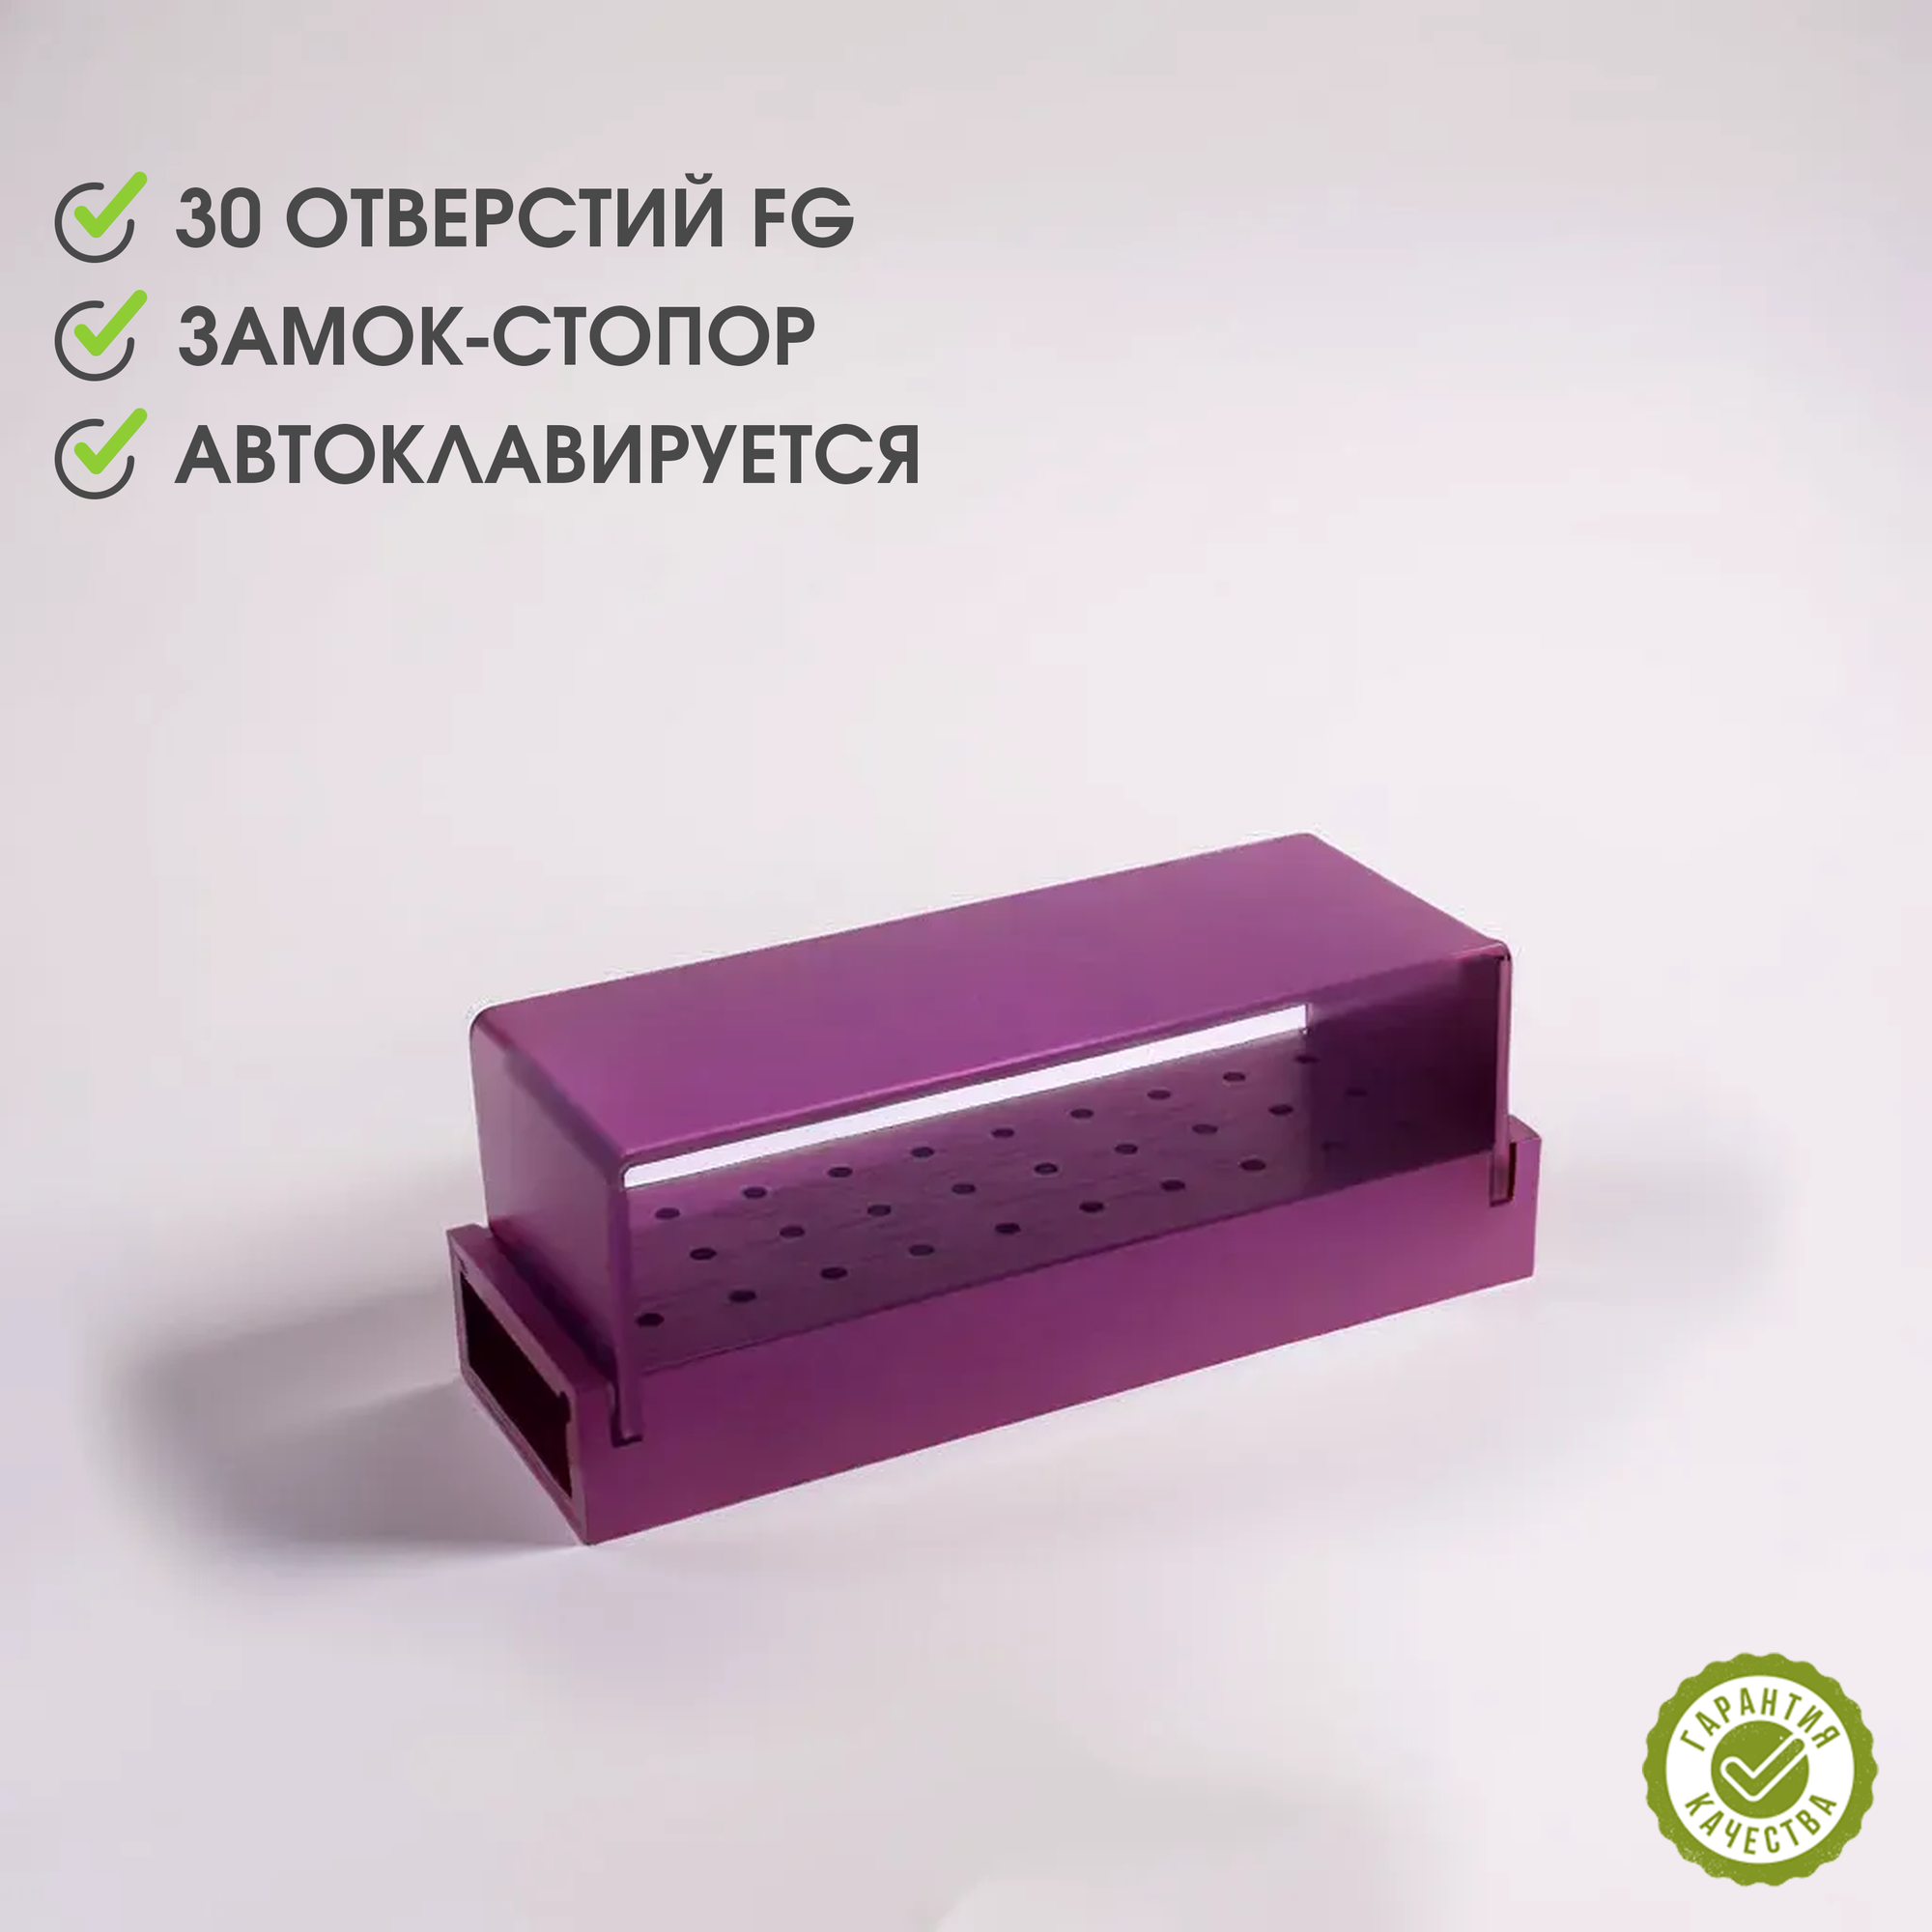 Подставка / бокс / органайзер / термоблок для хранения и стерилизации на 30 боров FG фиолетовый (purple) со стопором